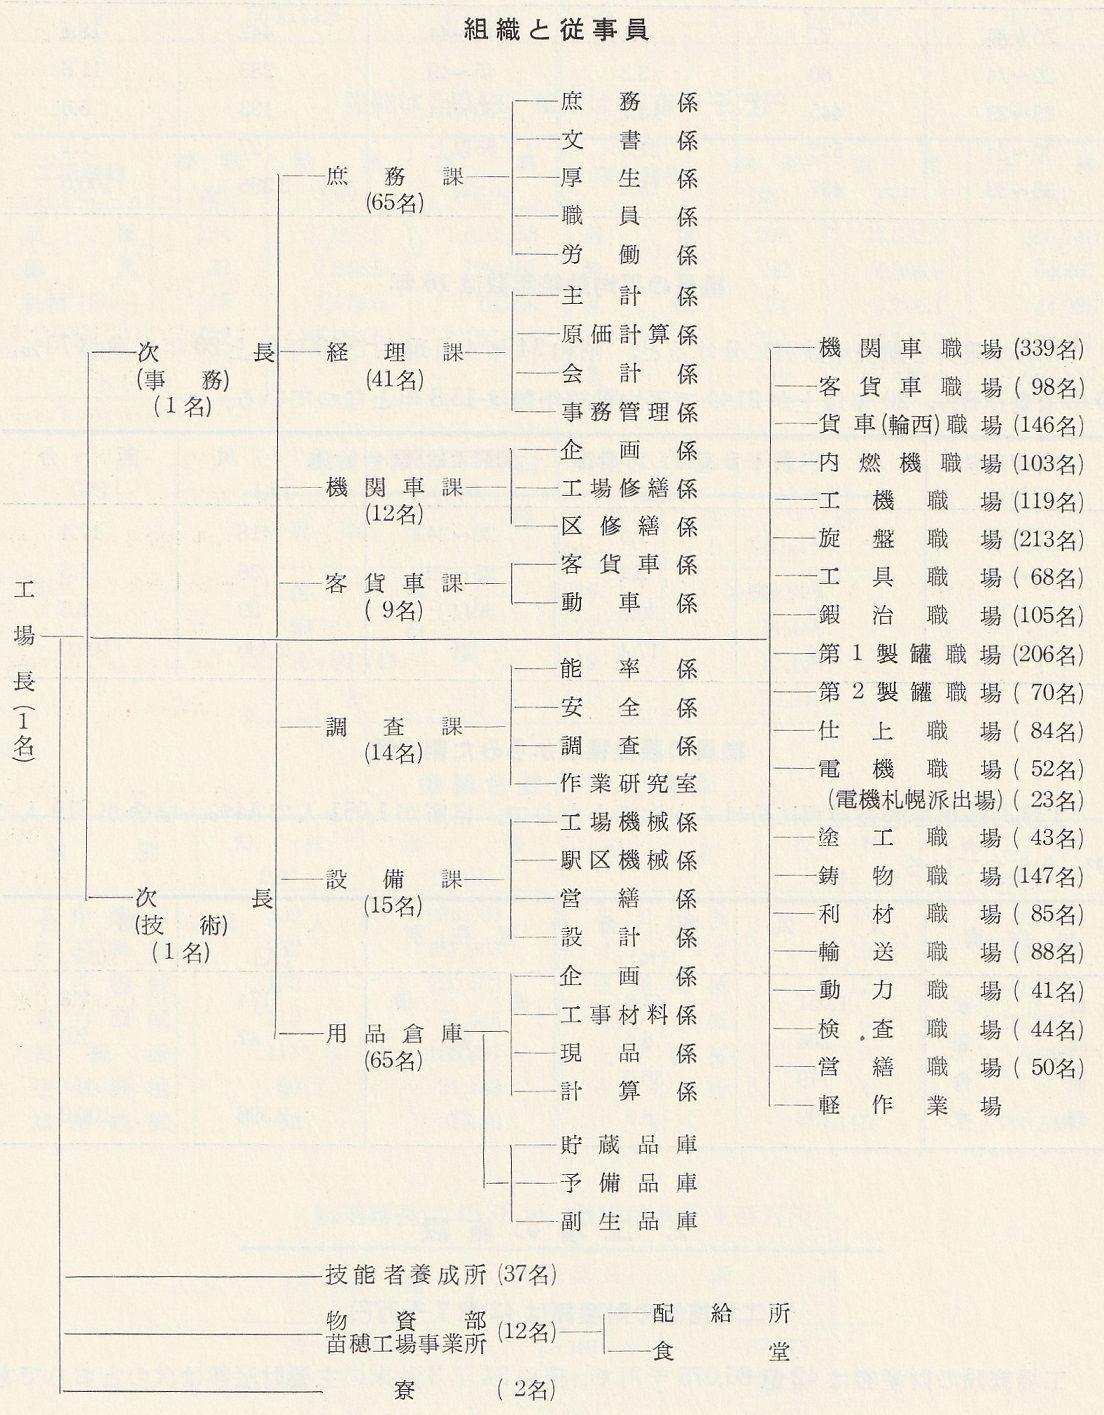 苗穂工場組織図(1961年)a01